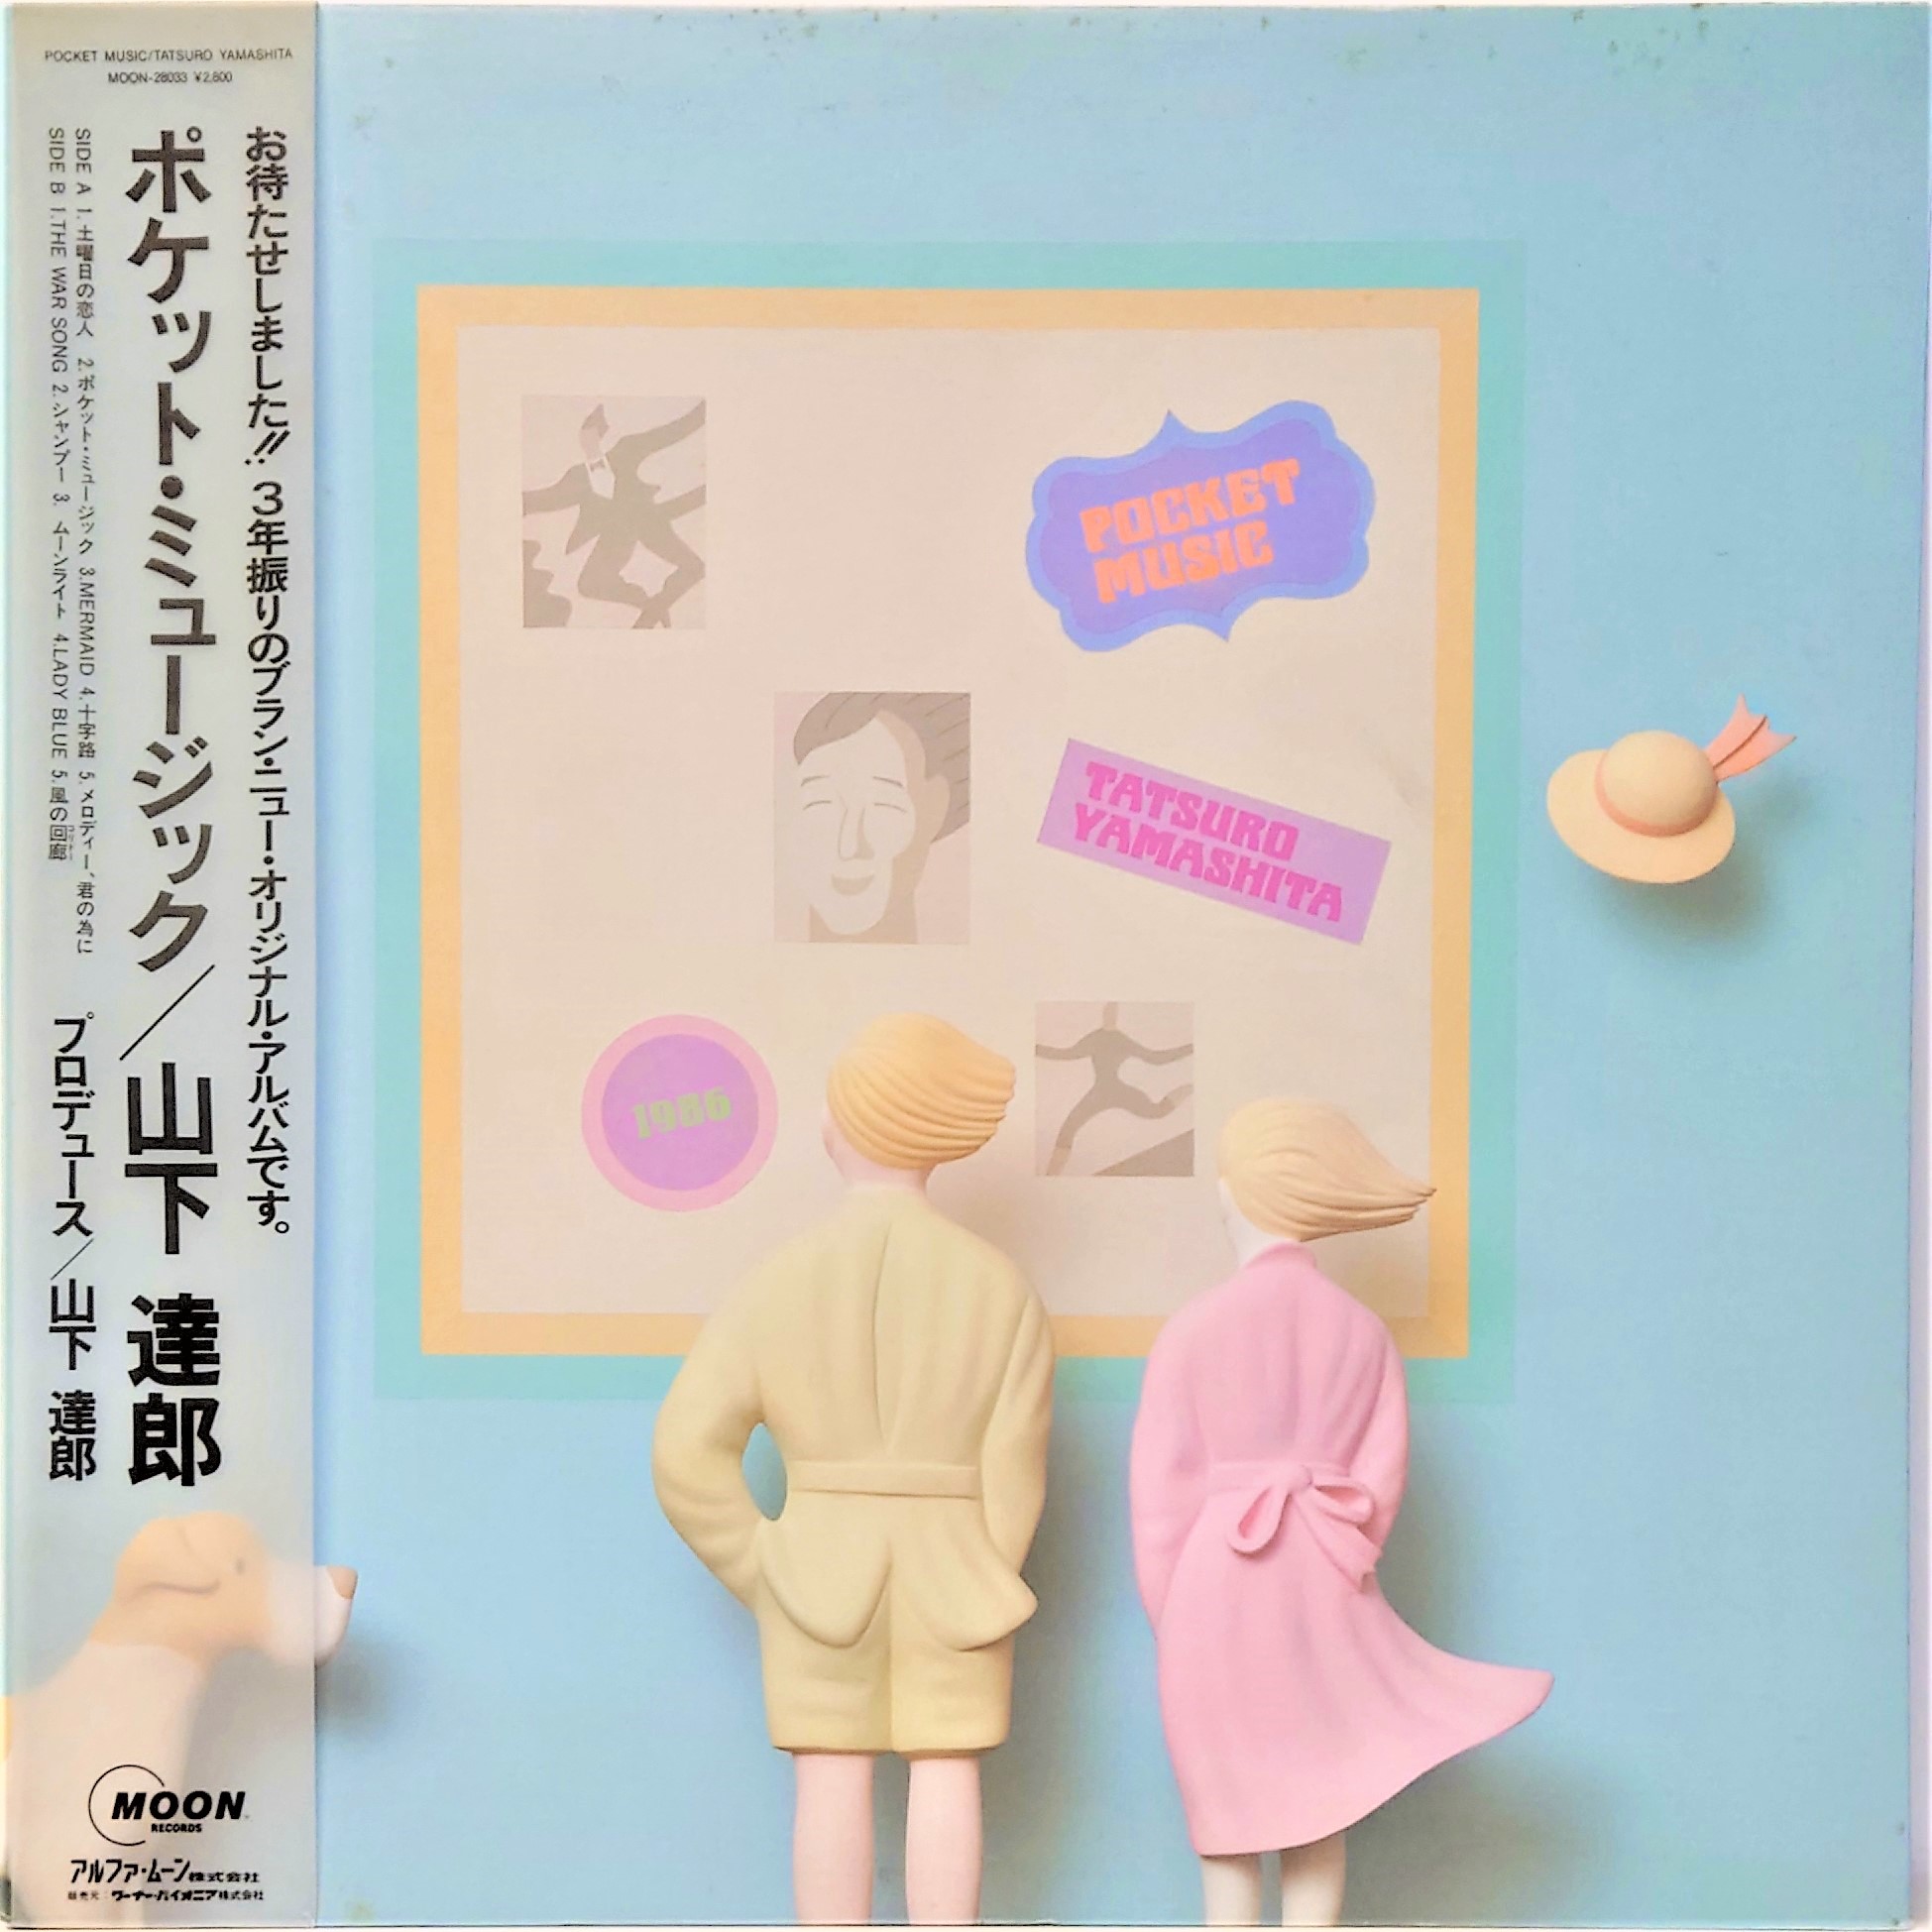 山下 達郎 ‎– Pocket Music | 中古レコード通販・買取のアカル・レコーズ